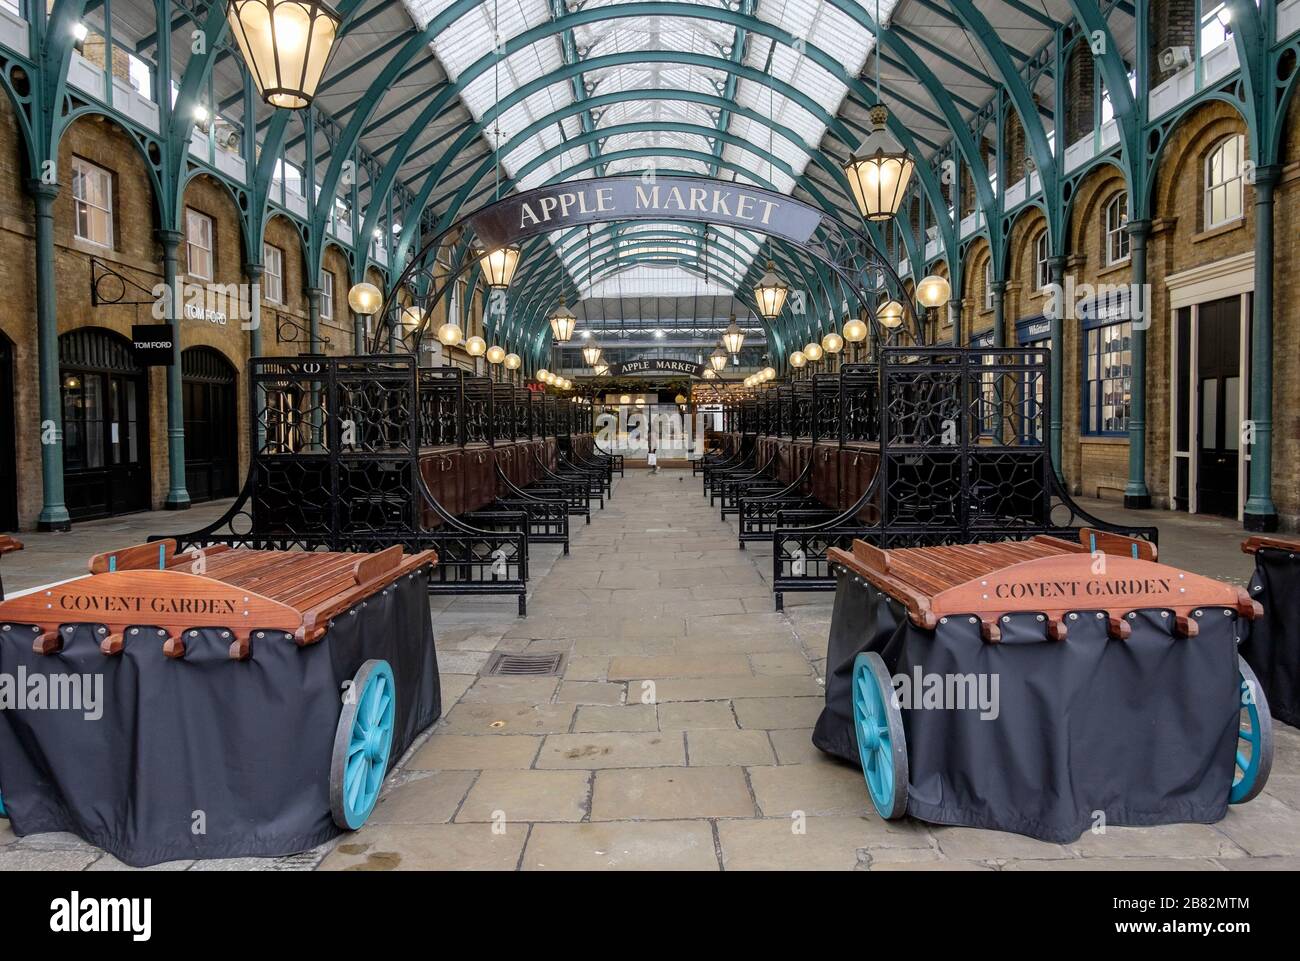 Londra, Regno Unito. 19 marzo 2020. Il mercato di Apple, normalmente un mercato quotidiano occupato che vende oggetti artigianali e di design fatti a mano, popolare tra i turisti, è completamente desertato. Foto Stock